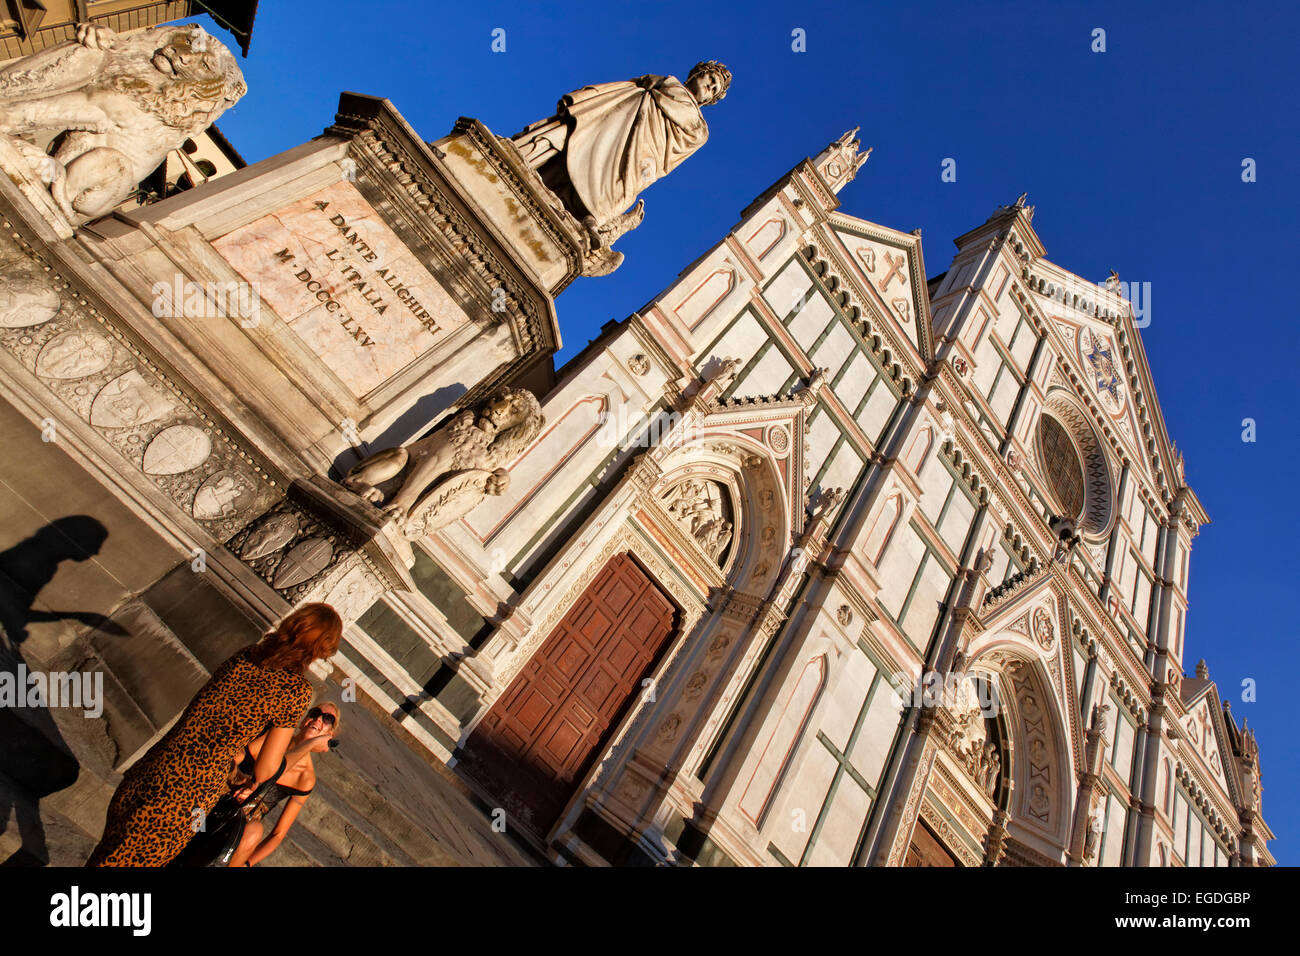 La facciata della basilica di Santa Croce, noto anche come il pantheon di Firenze e la statua di Dante Alighieri, Firenze, Toscana, Italia Foto Stock